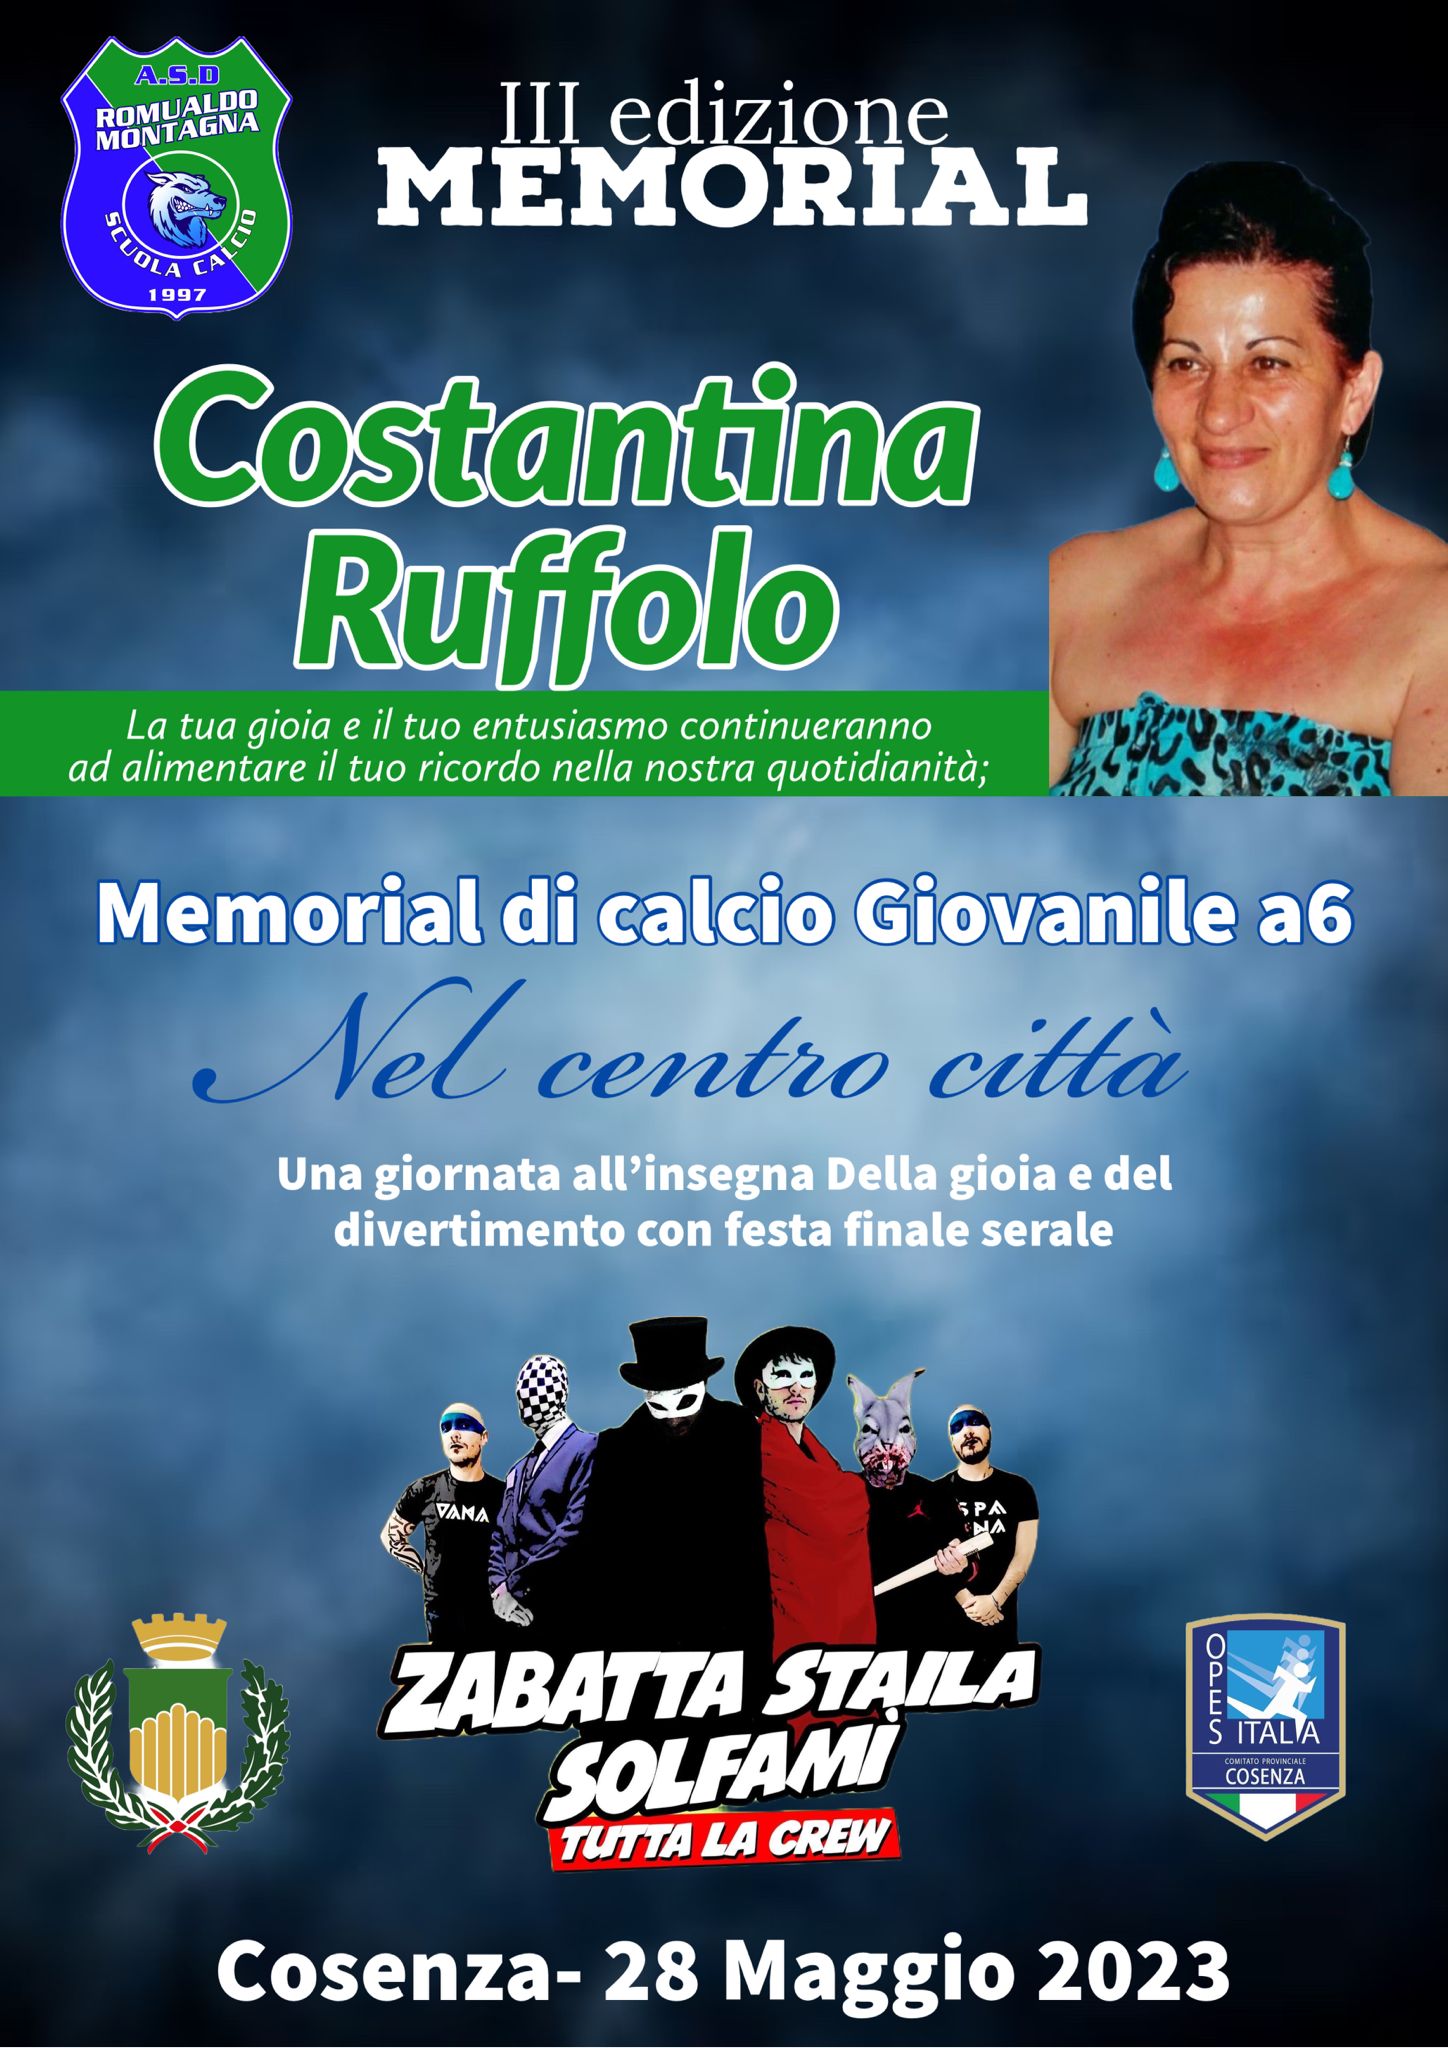 Constantina Ruffolo